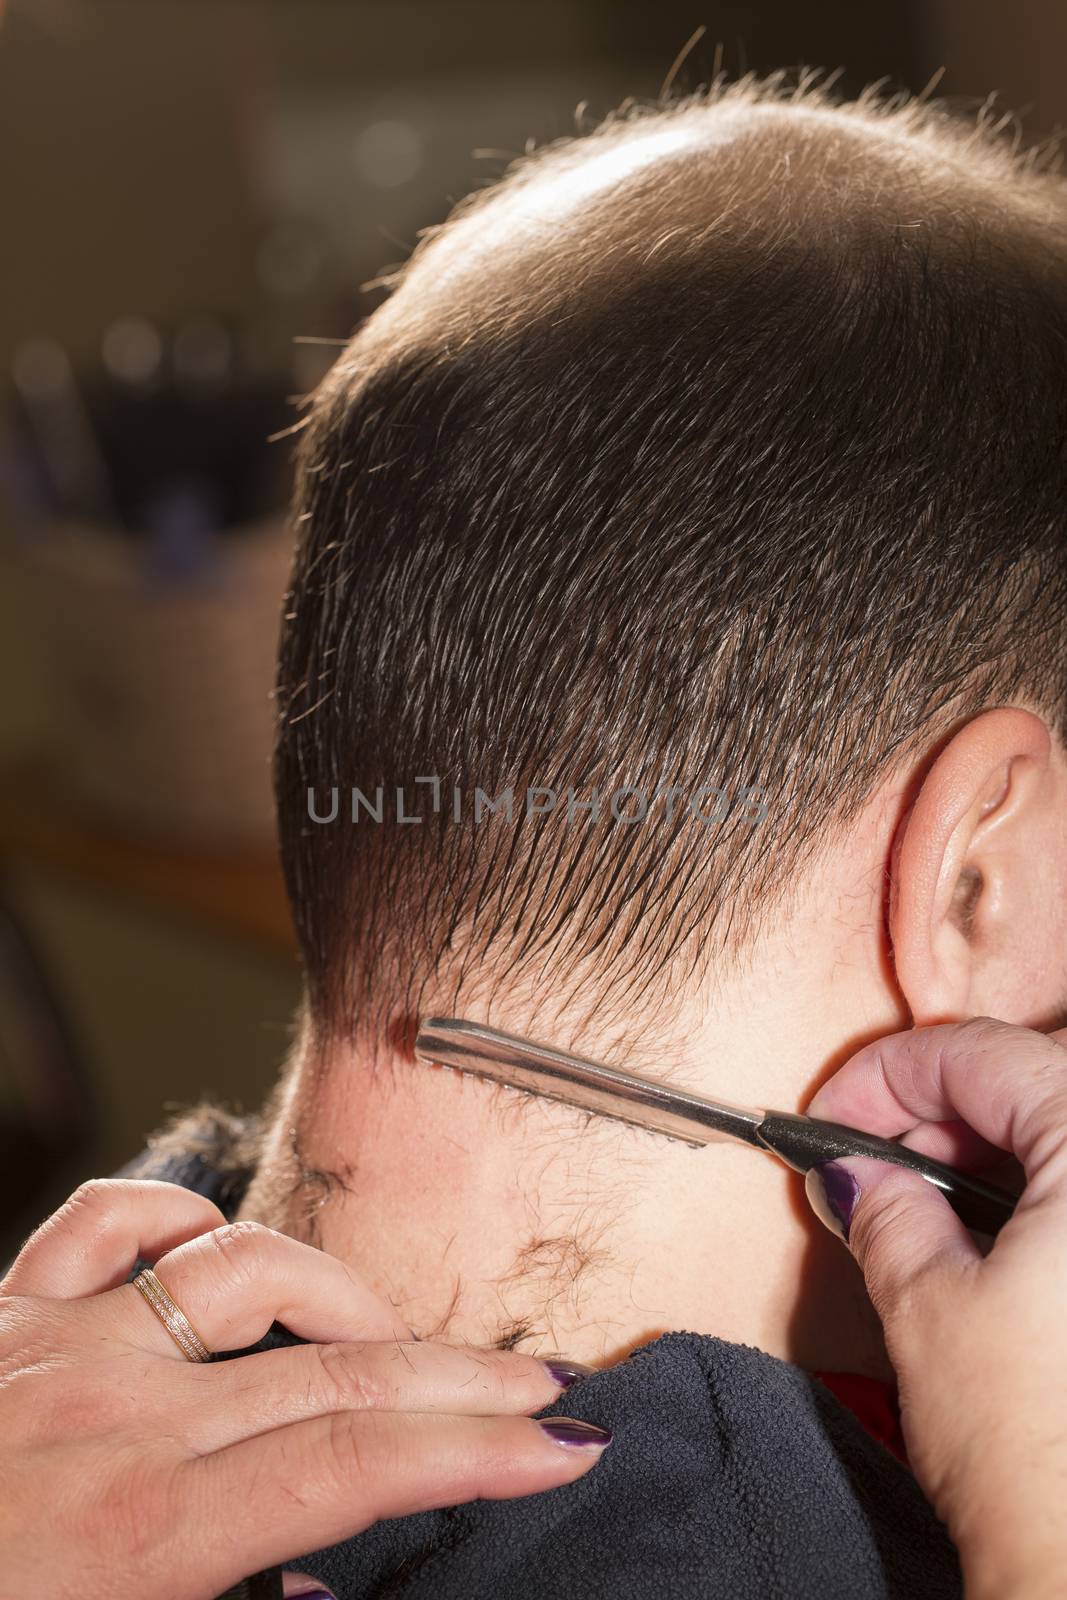 Hairdresser shaving man with hair trimmer. Baldness